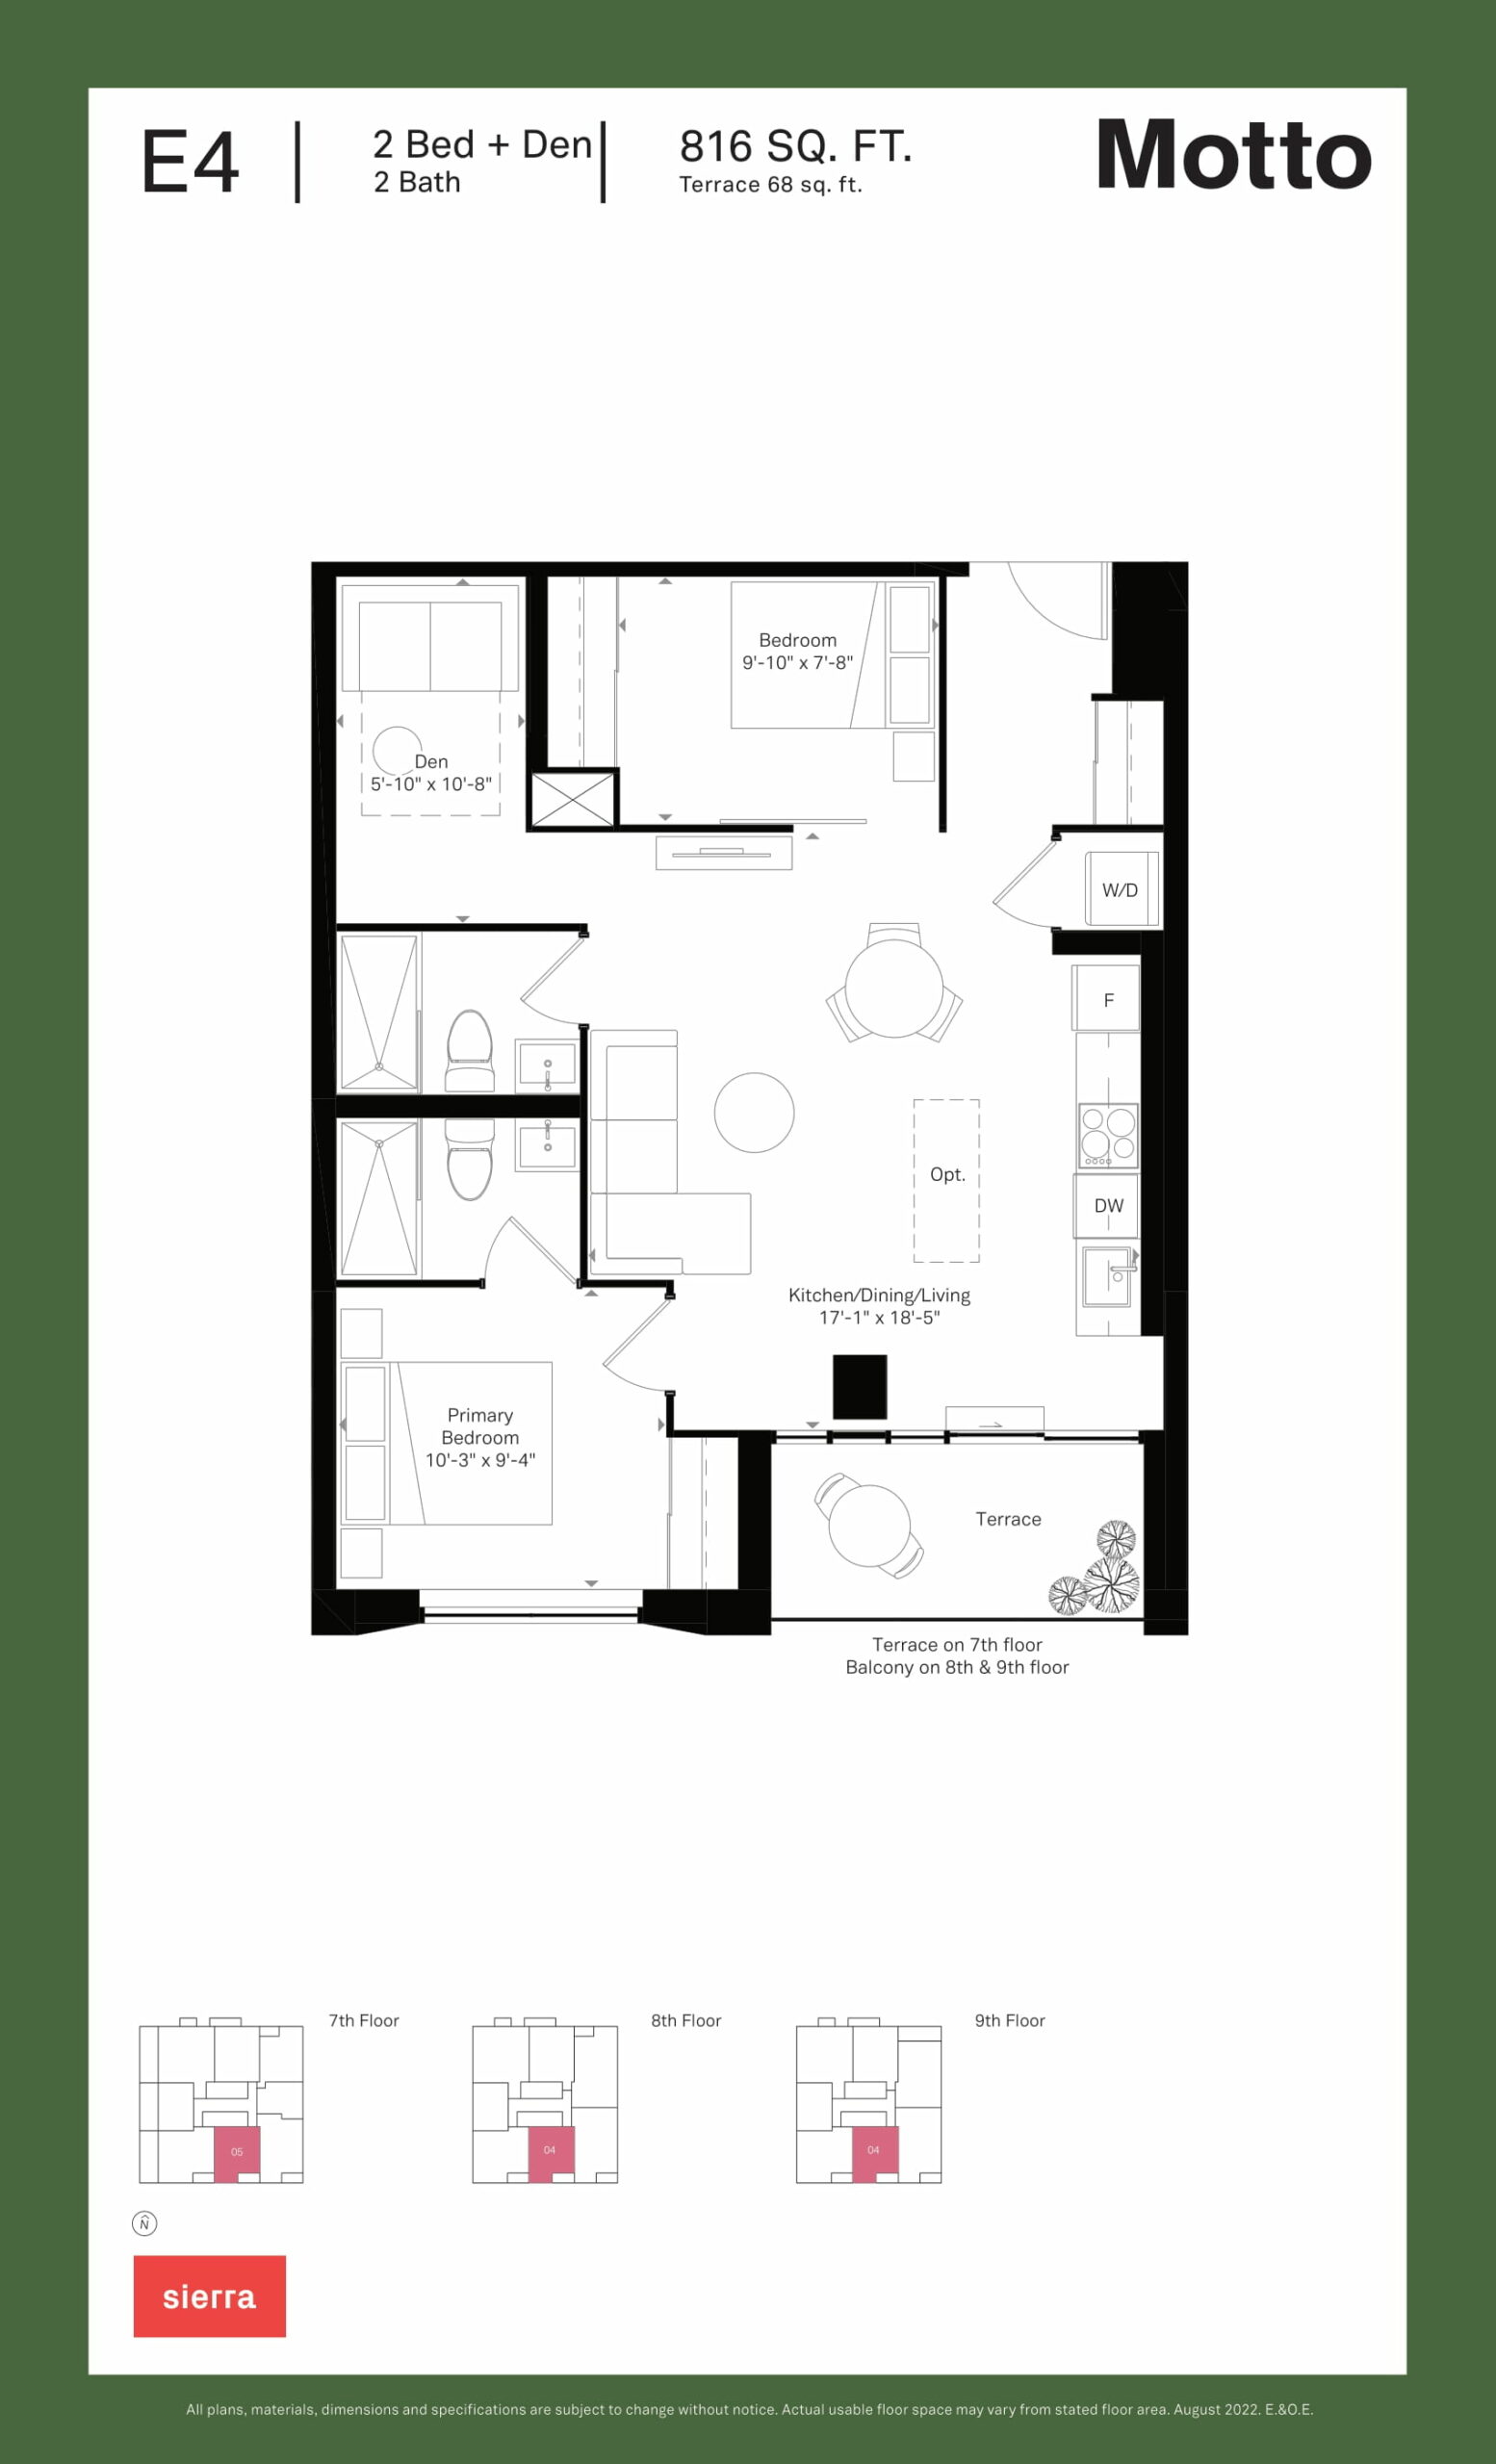 Motto - Floor Plans-19